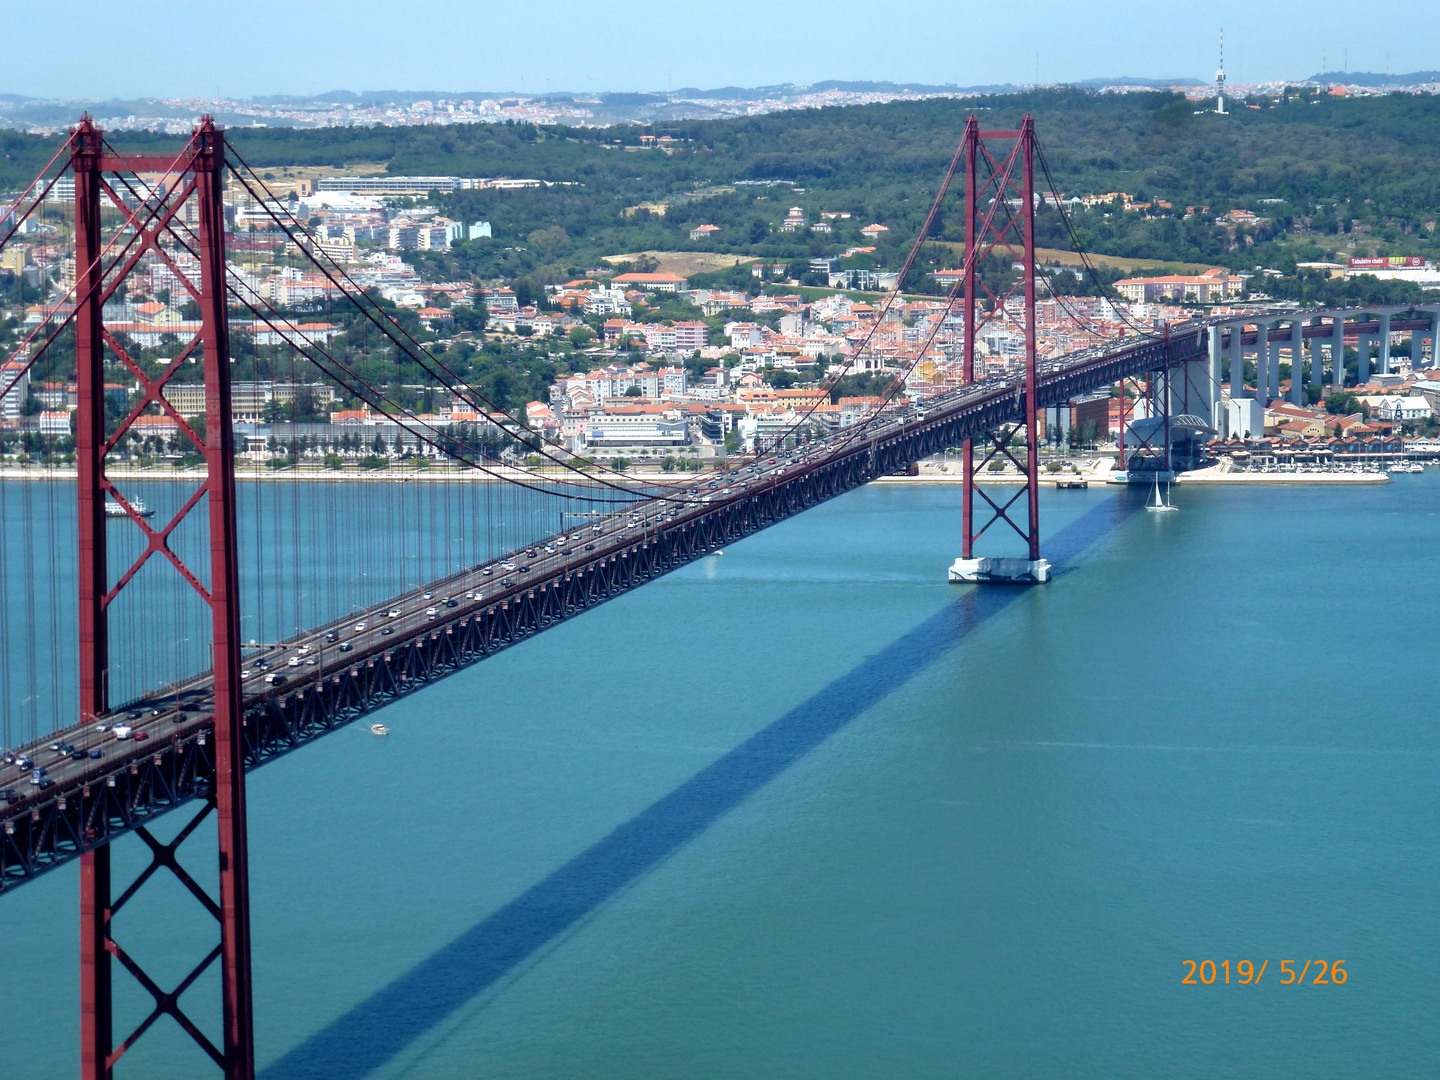 Hängebrücke von Lissabon über den Tejo, Ponte 25 de Abril